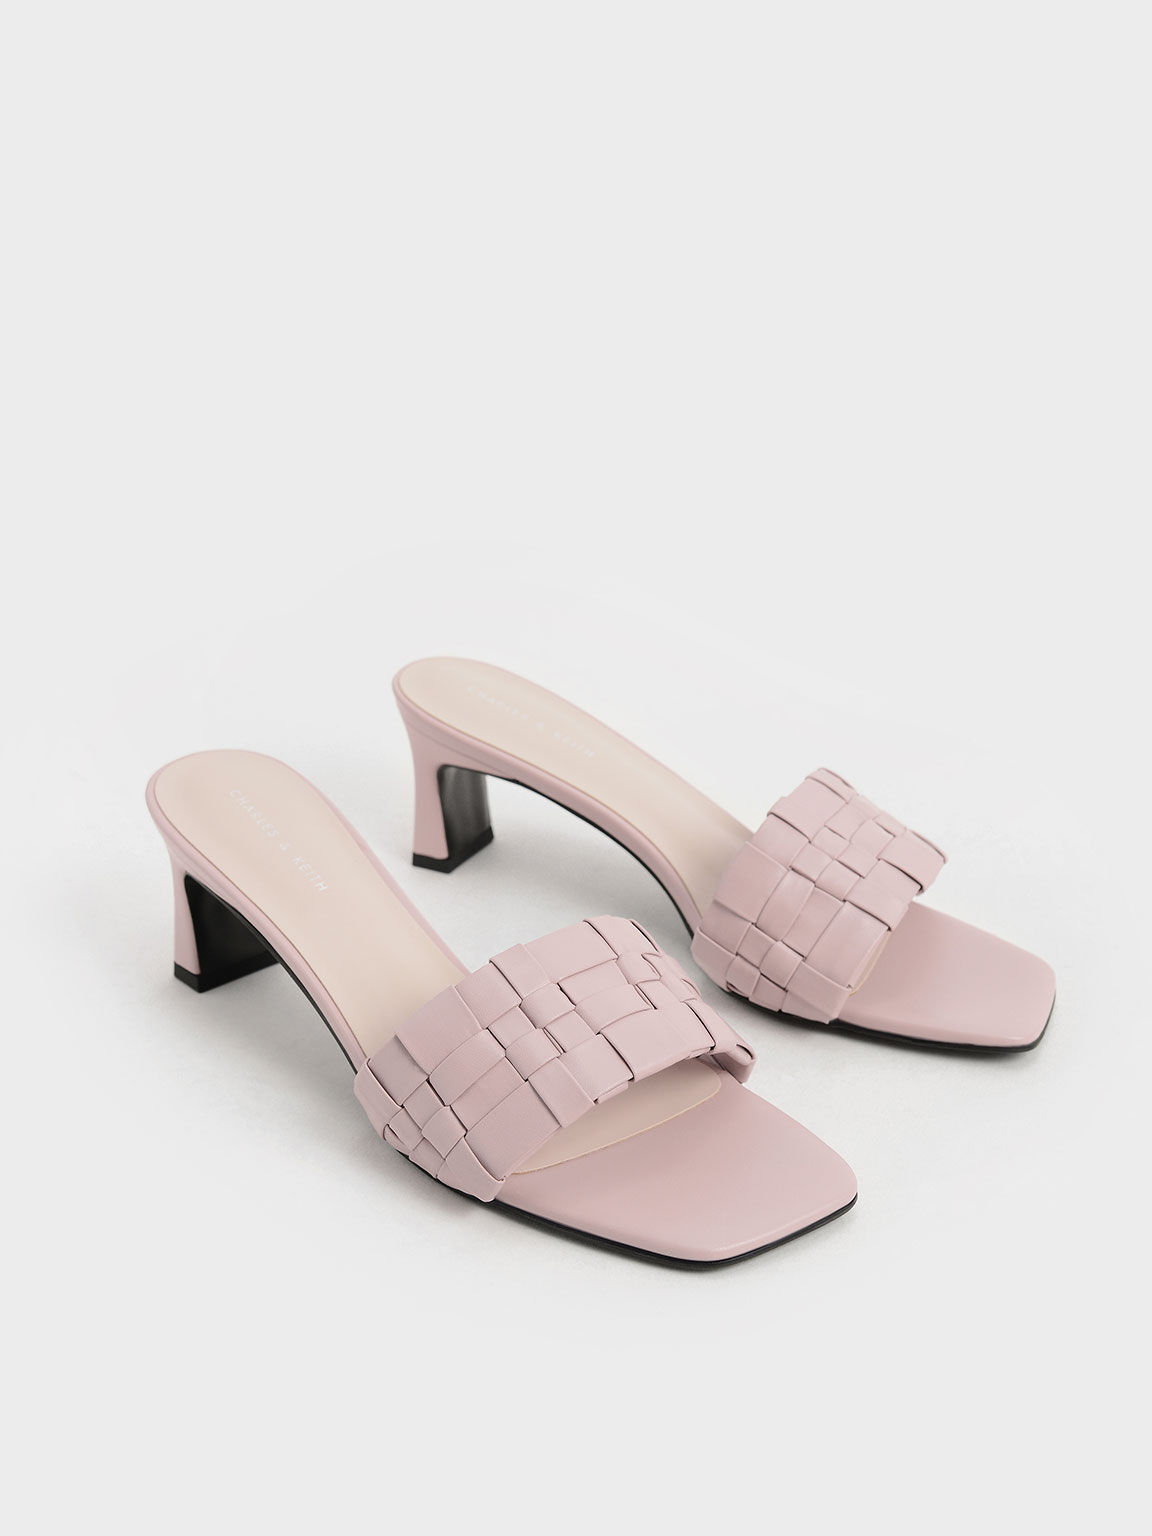 Sandal Mules Woven Square Toe, Light Pink, hi-res